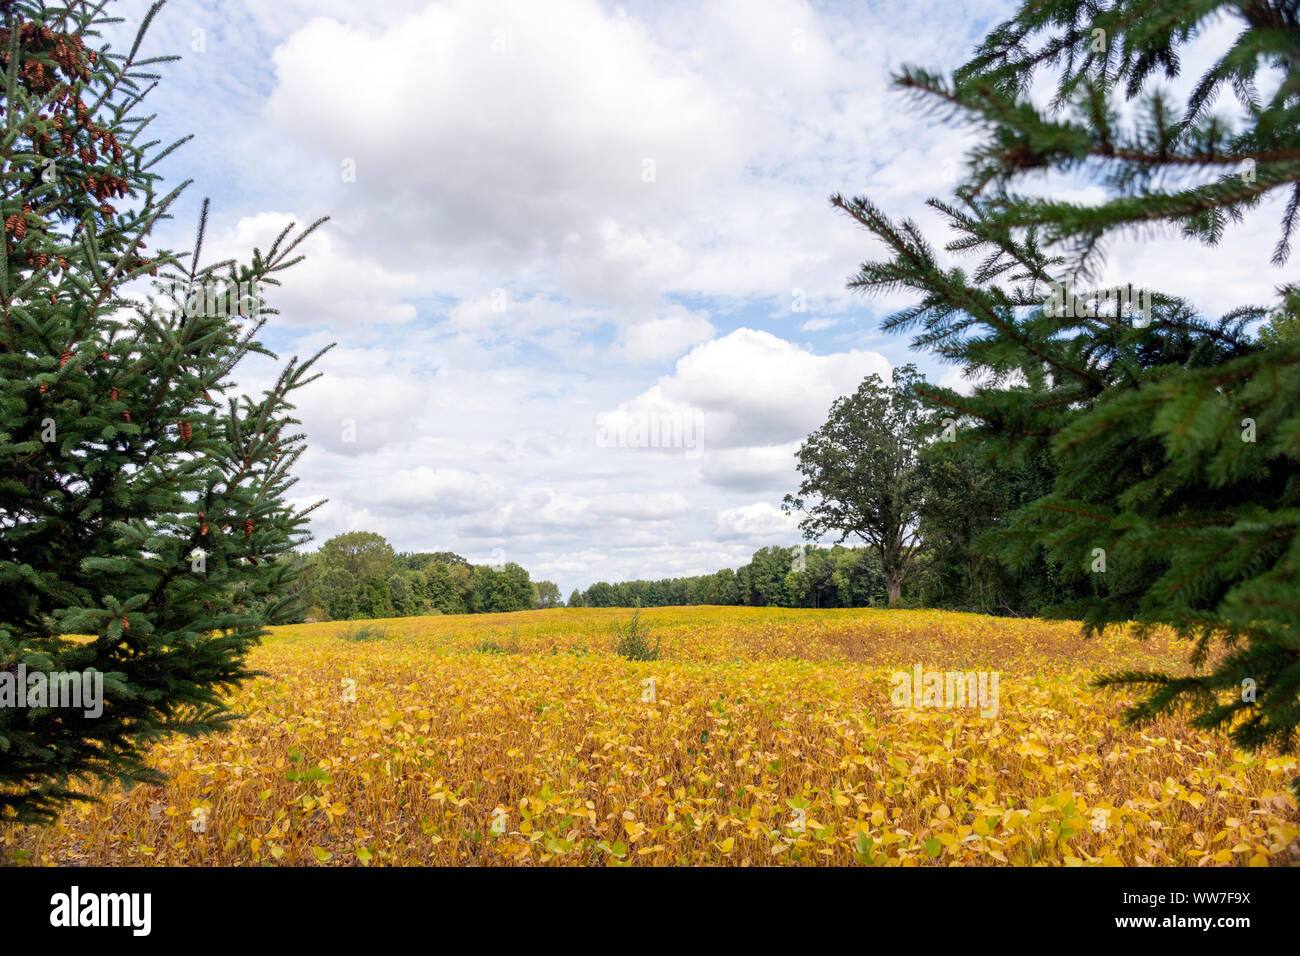 La soja en un campo de Ontario esperar cosecha en otoño, reflejando mundiales recientes desafíos comerciales y arancelarias que puede hacer daño a los agricultores. Foto de stock